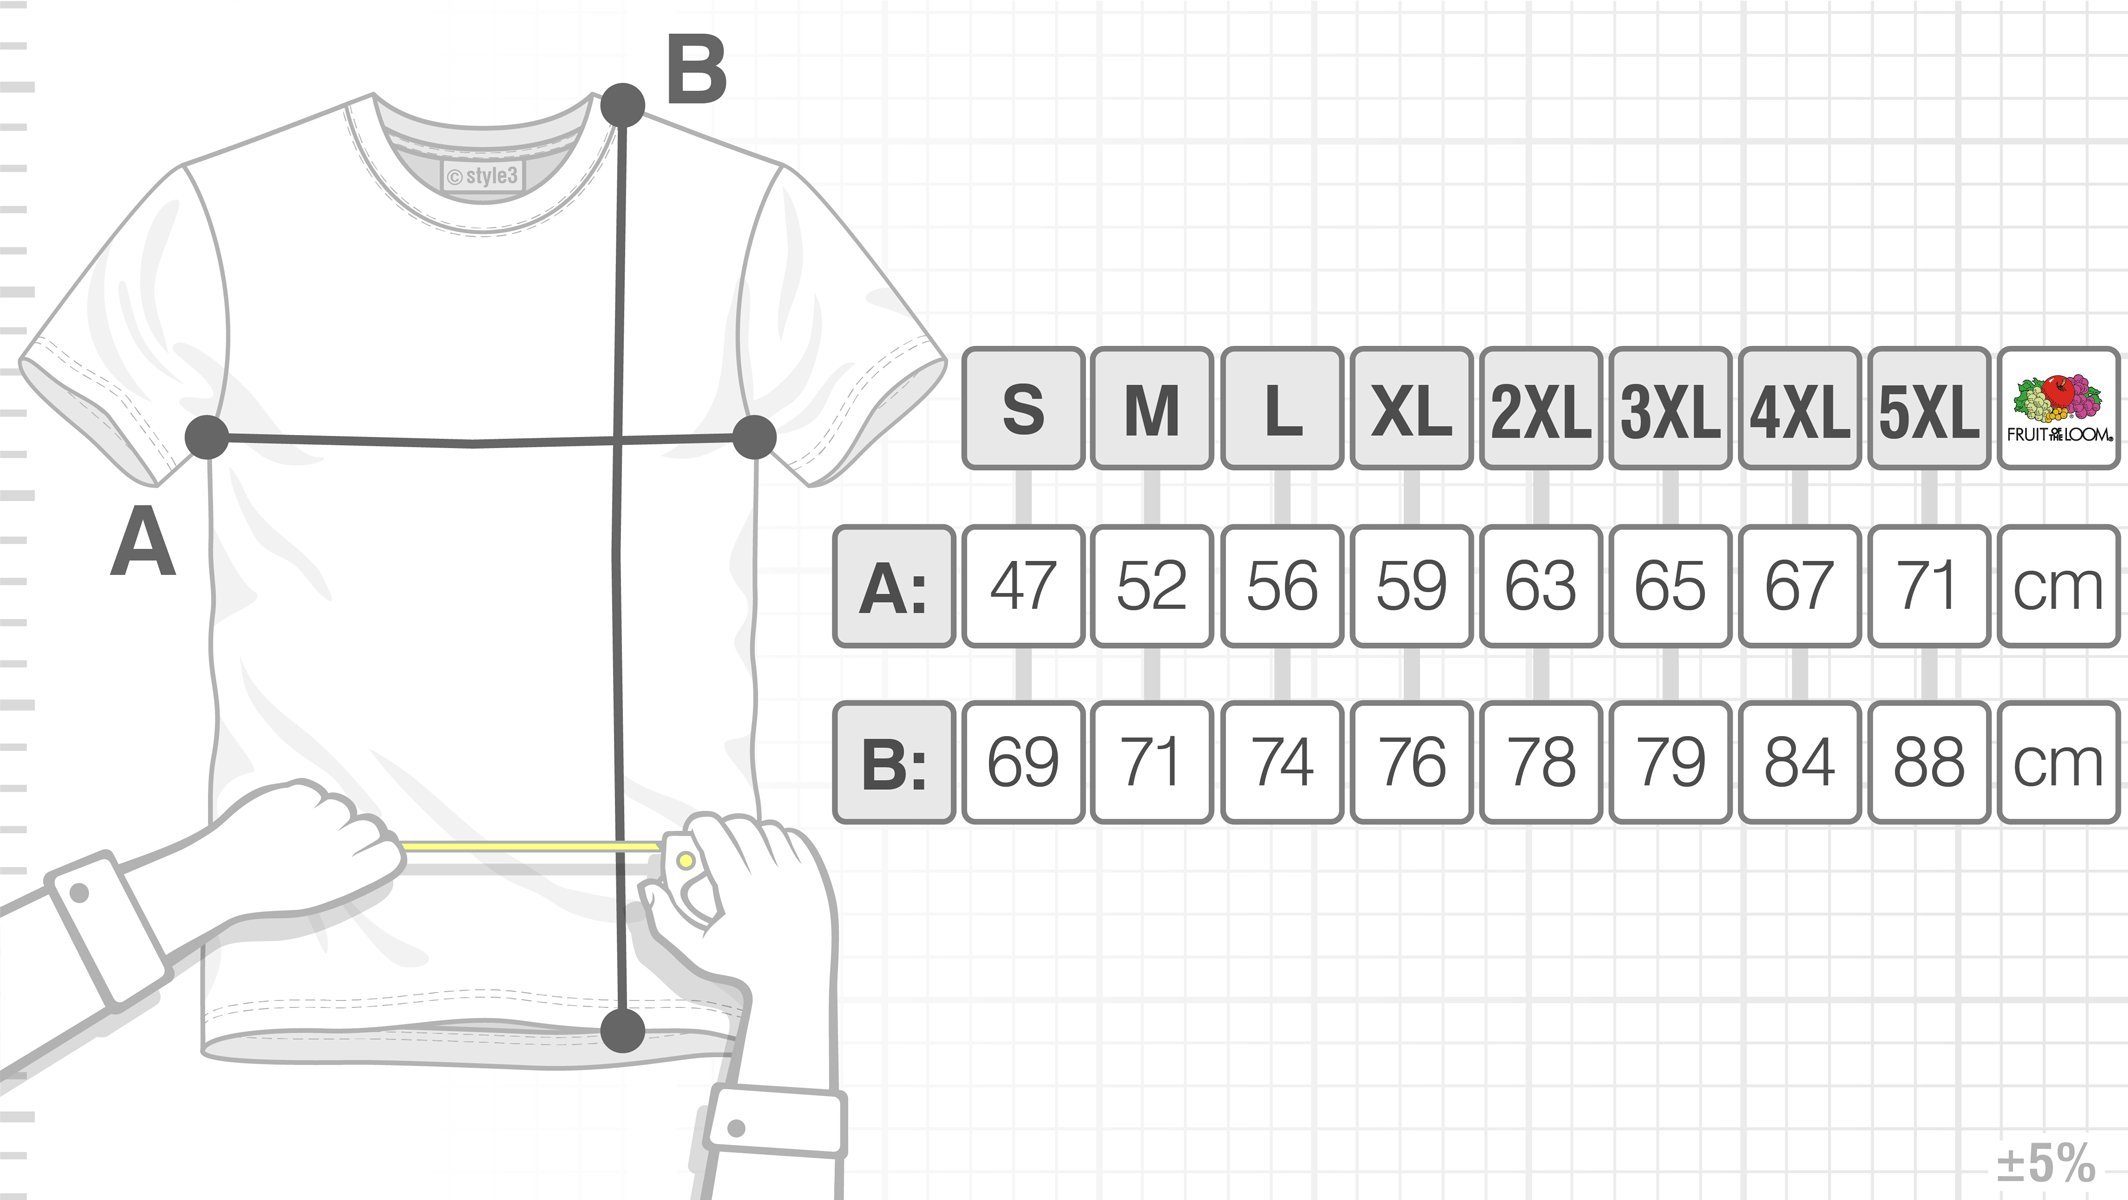 hyrule zelda wild Link game Herren weiß T-Shirt style3 amiibo switch Print-Shirt gamer Legend boy spiel